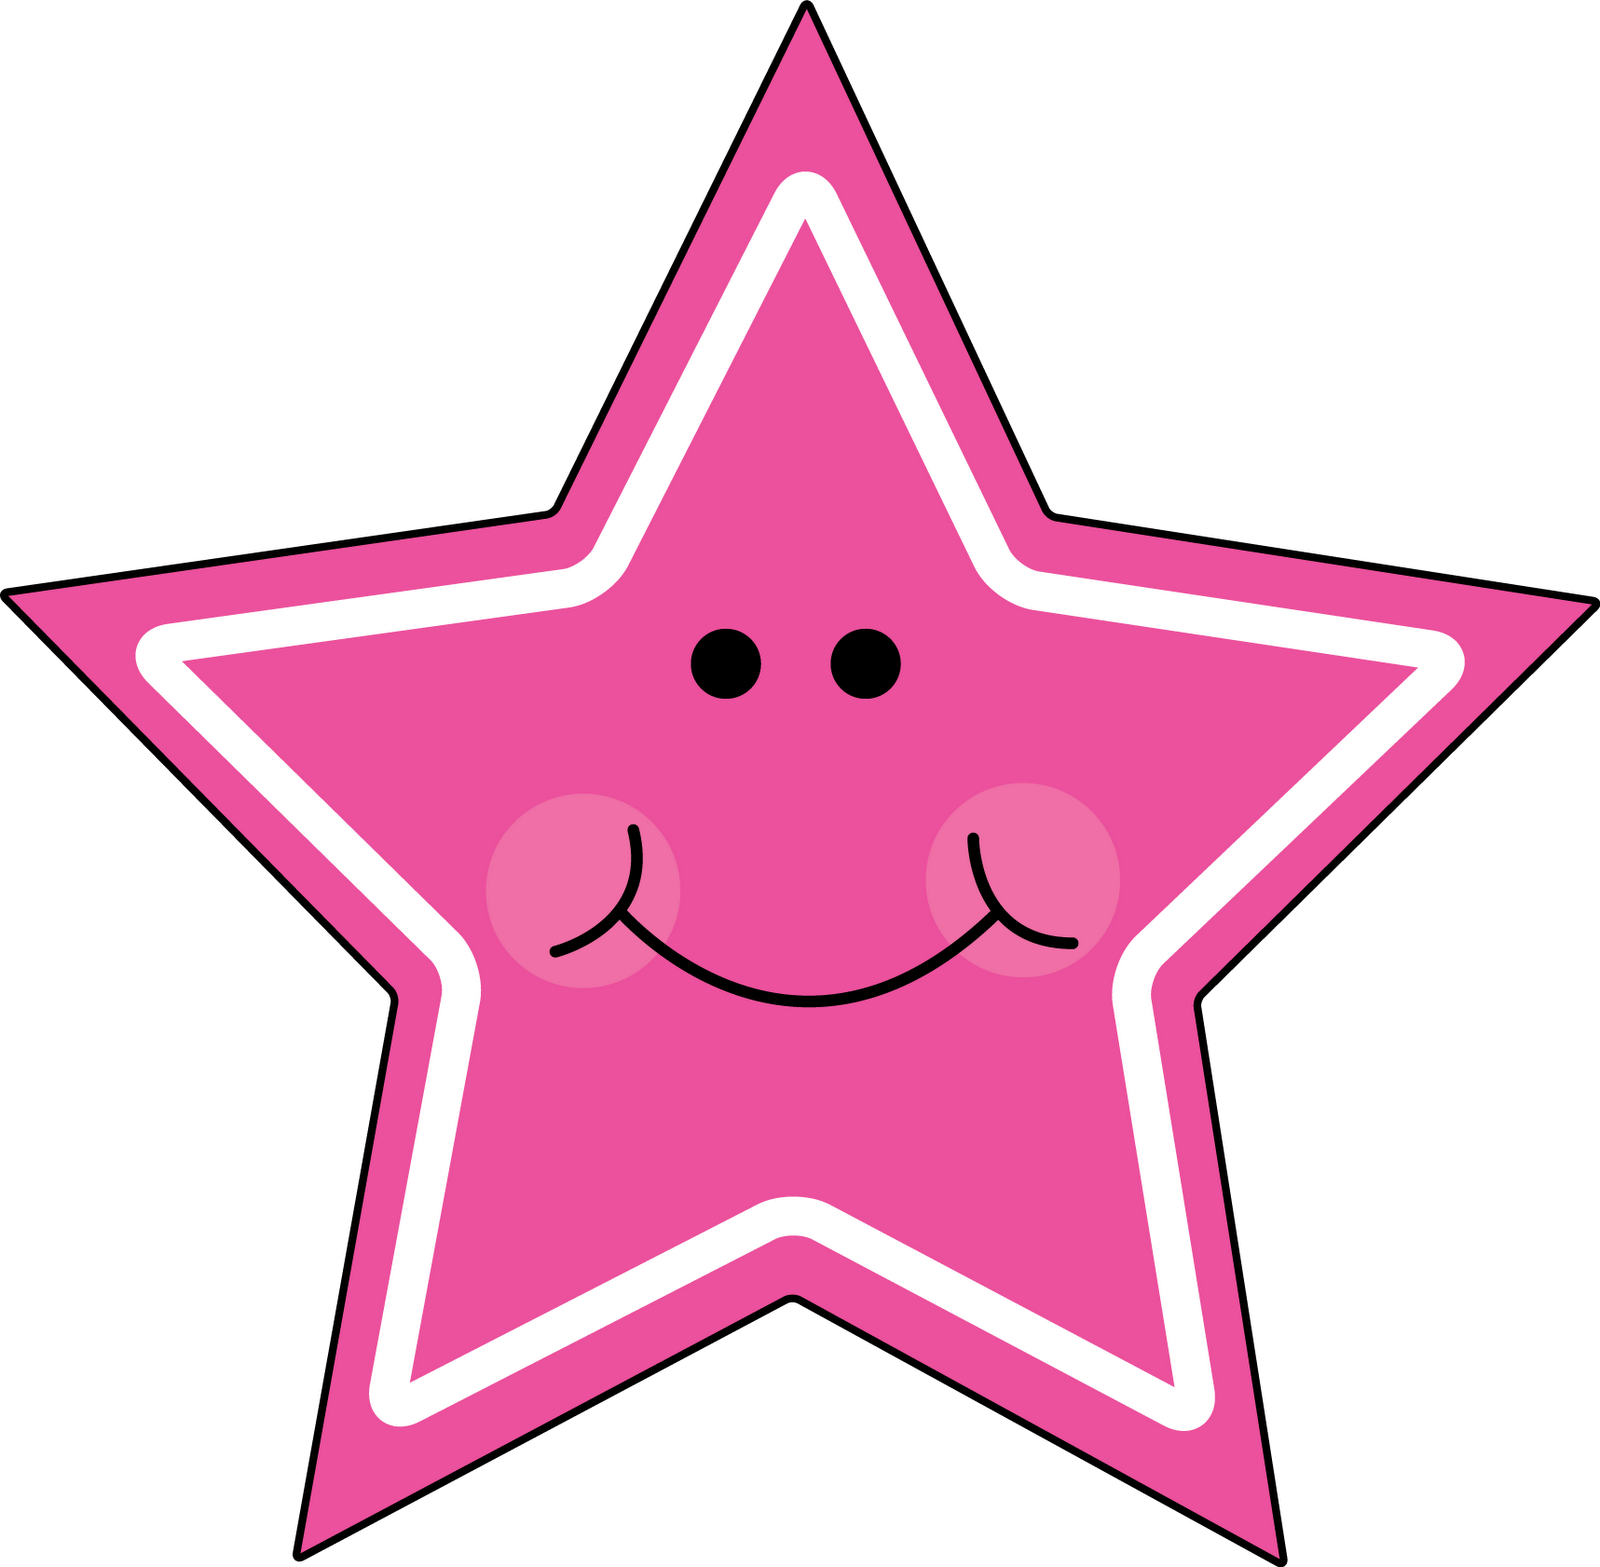 Pink Star Clip Art   Clipart Best